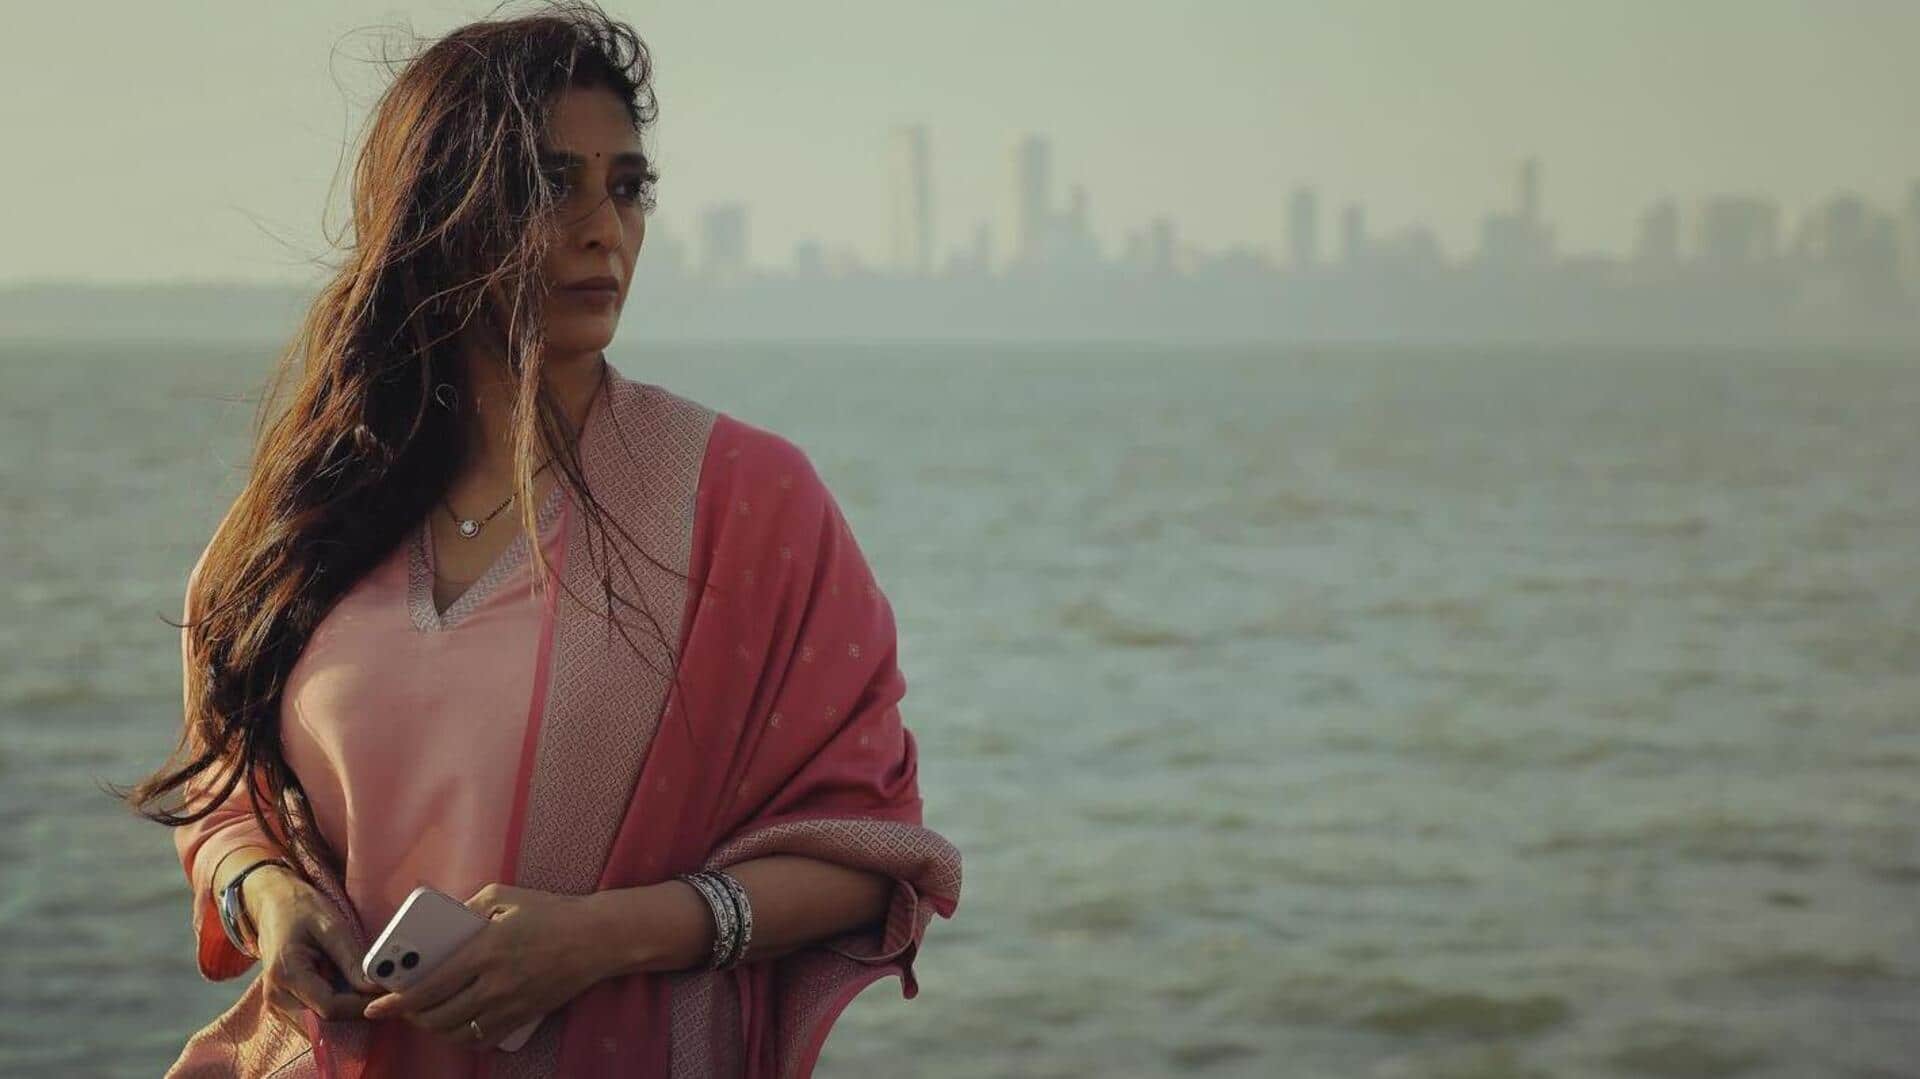 अजय देवगन की फिल्म 'औरों में कहां दम था' का पहला गाना 'तू' हुआ रिलीज